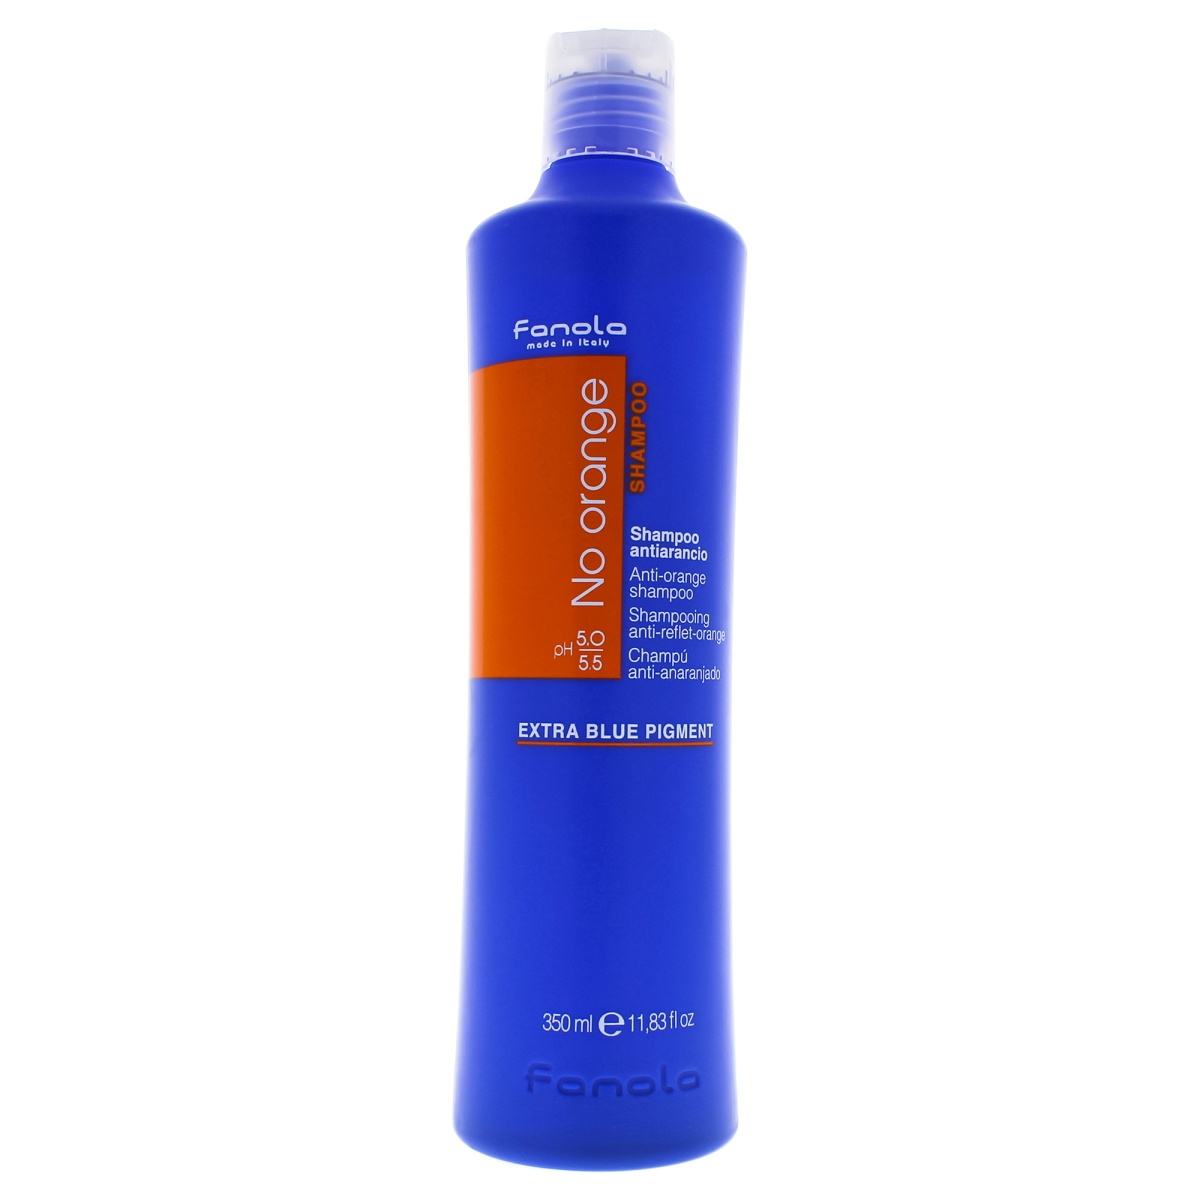 I0087914 No Orange Shampoo For Unisex - 11.8 Oz